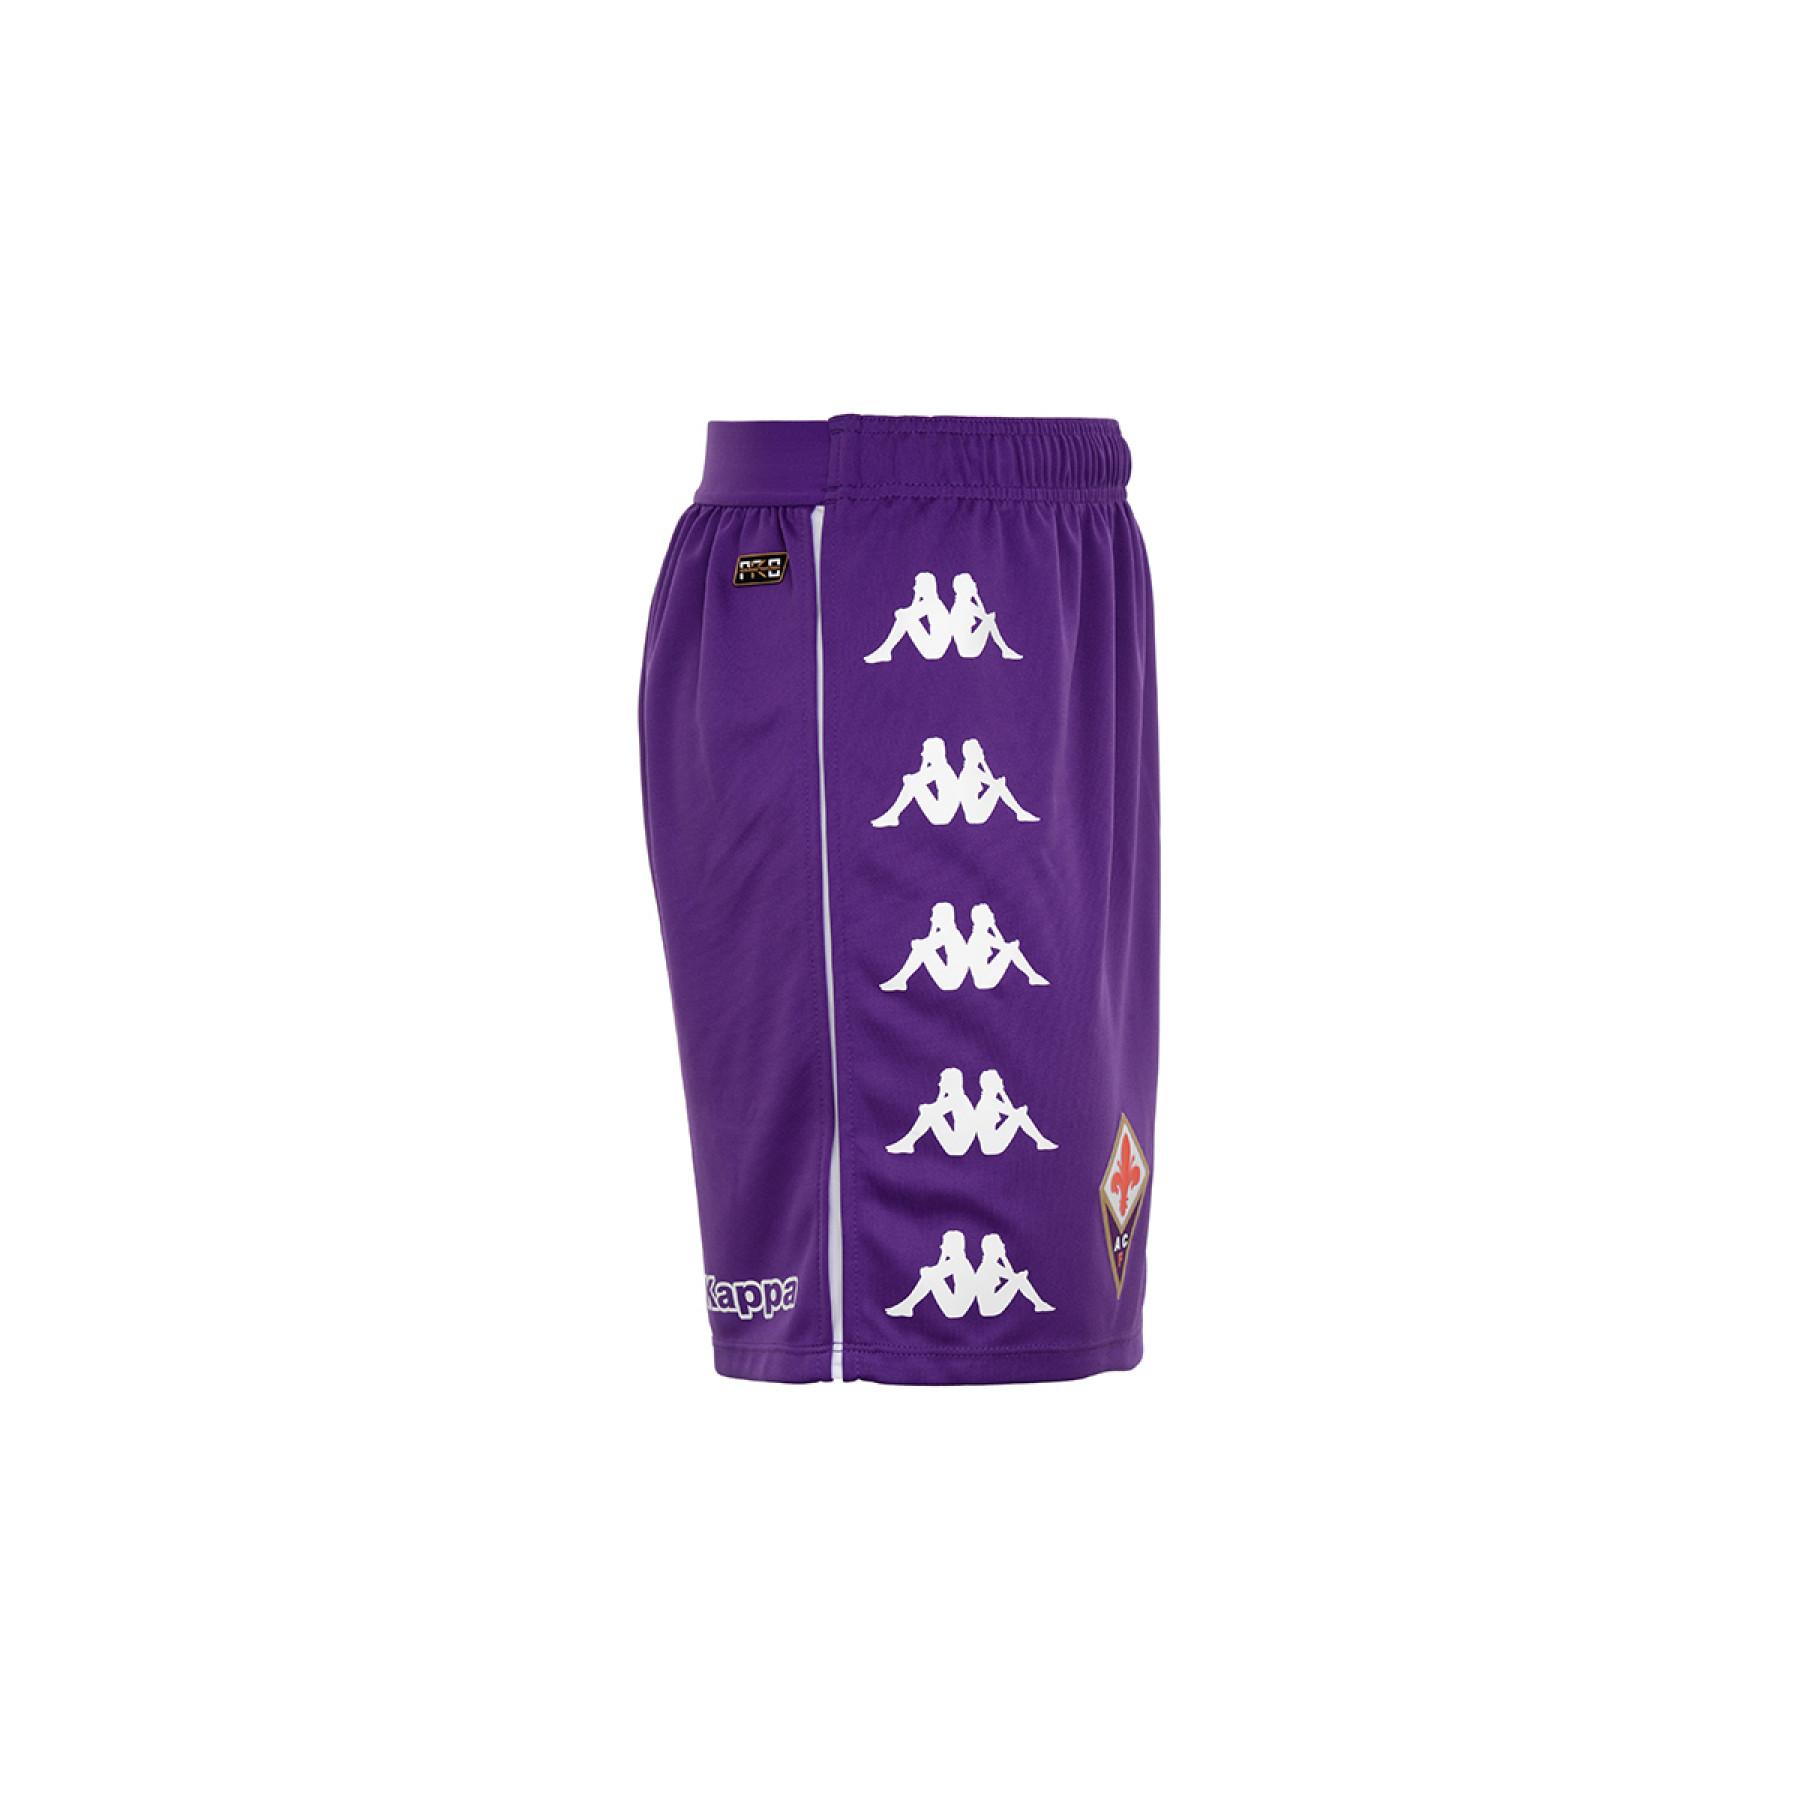 Home shorts Fiorentina AC 2020/21